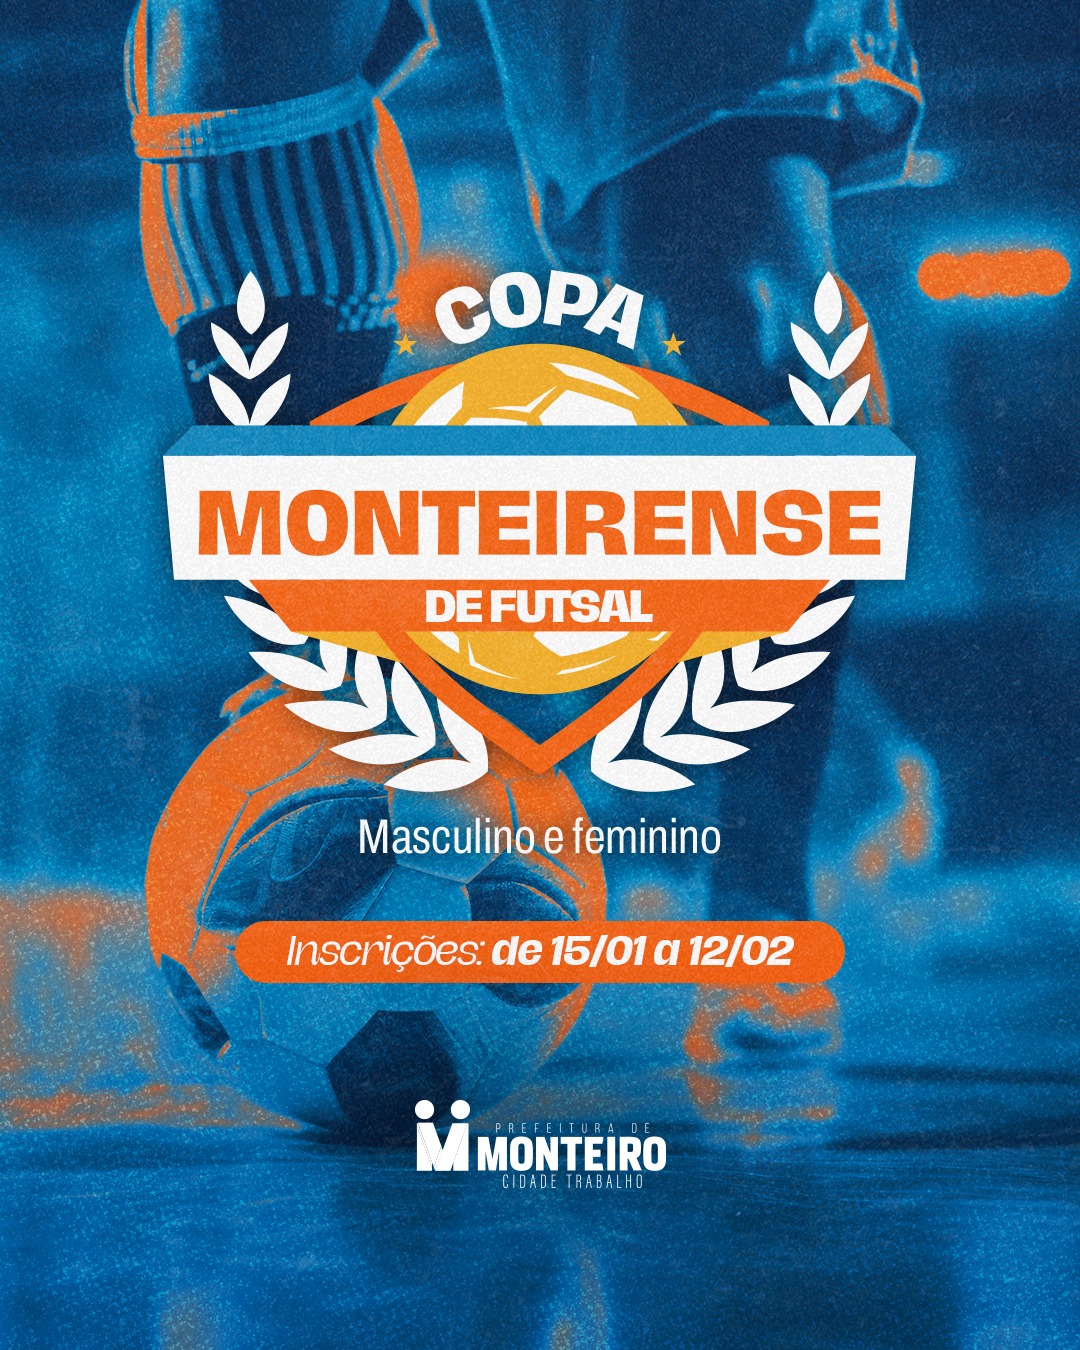 Calendário esportivo de Monteiro abre com inscrições para 03 competições de futebol e futsal